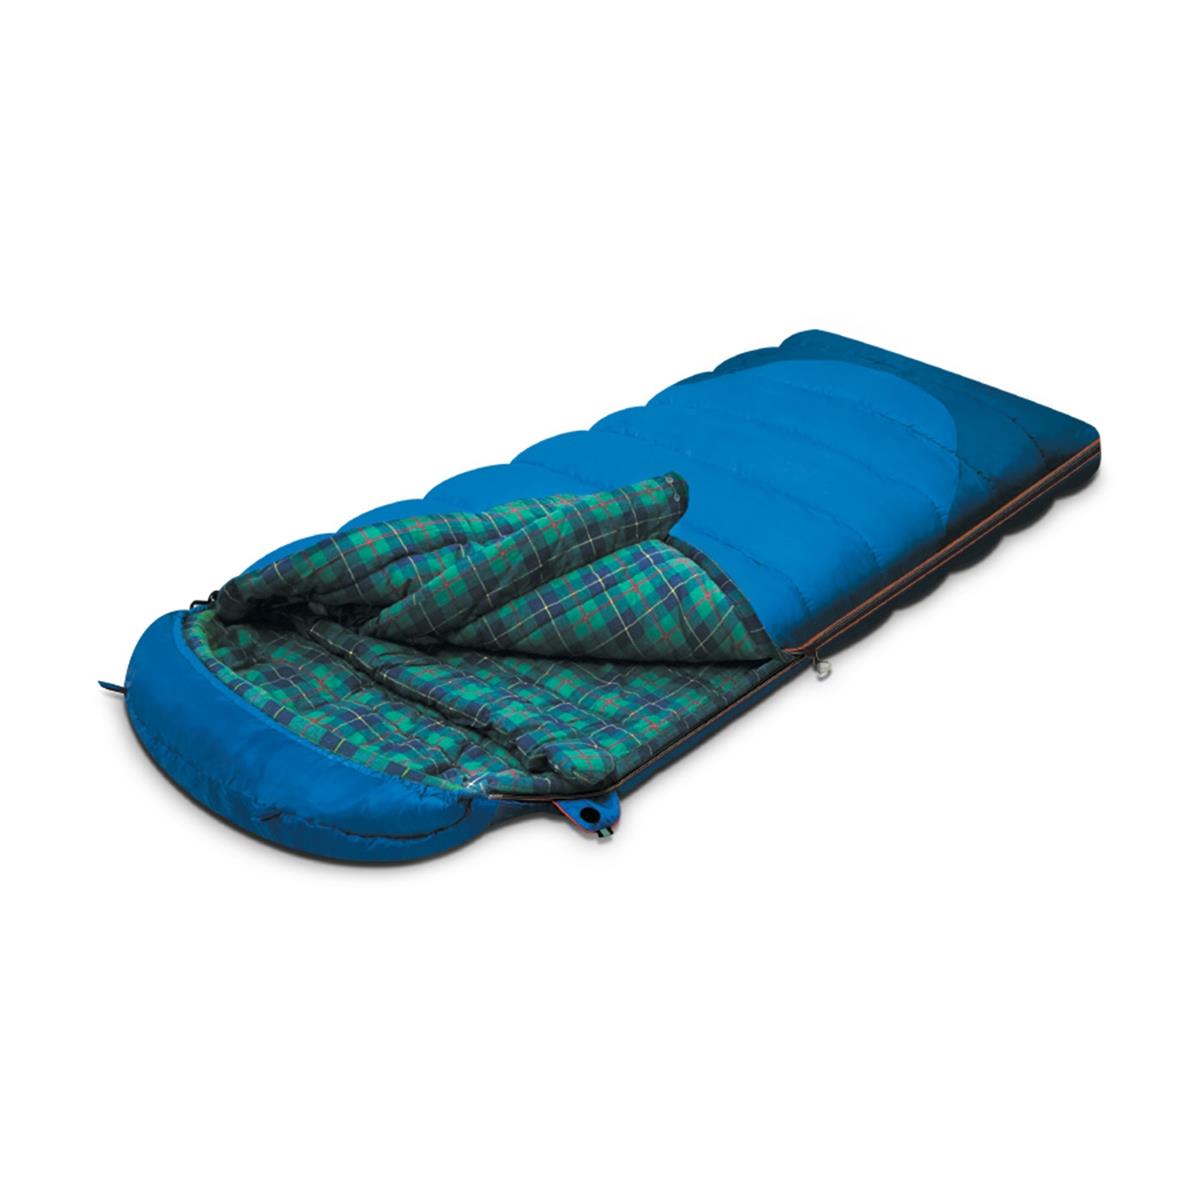 Мешок спальный TUNDRA Plus правый (9257.01051) ALEXIKA спальный мешок туристический 220 х 75 см до 20 градусов 700 г м2 синий